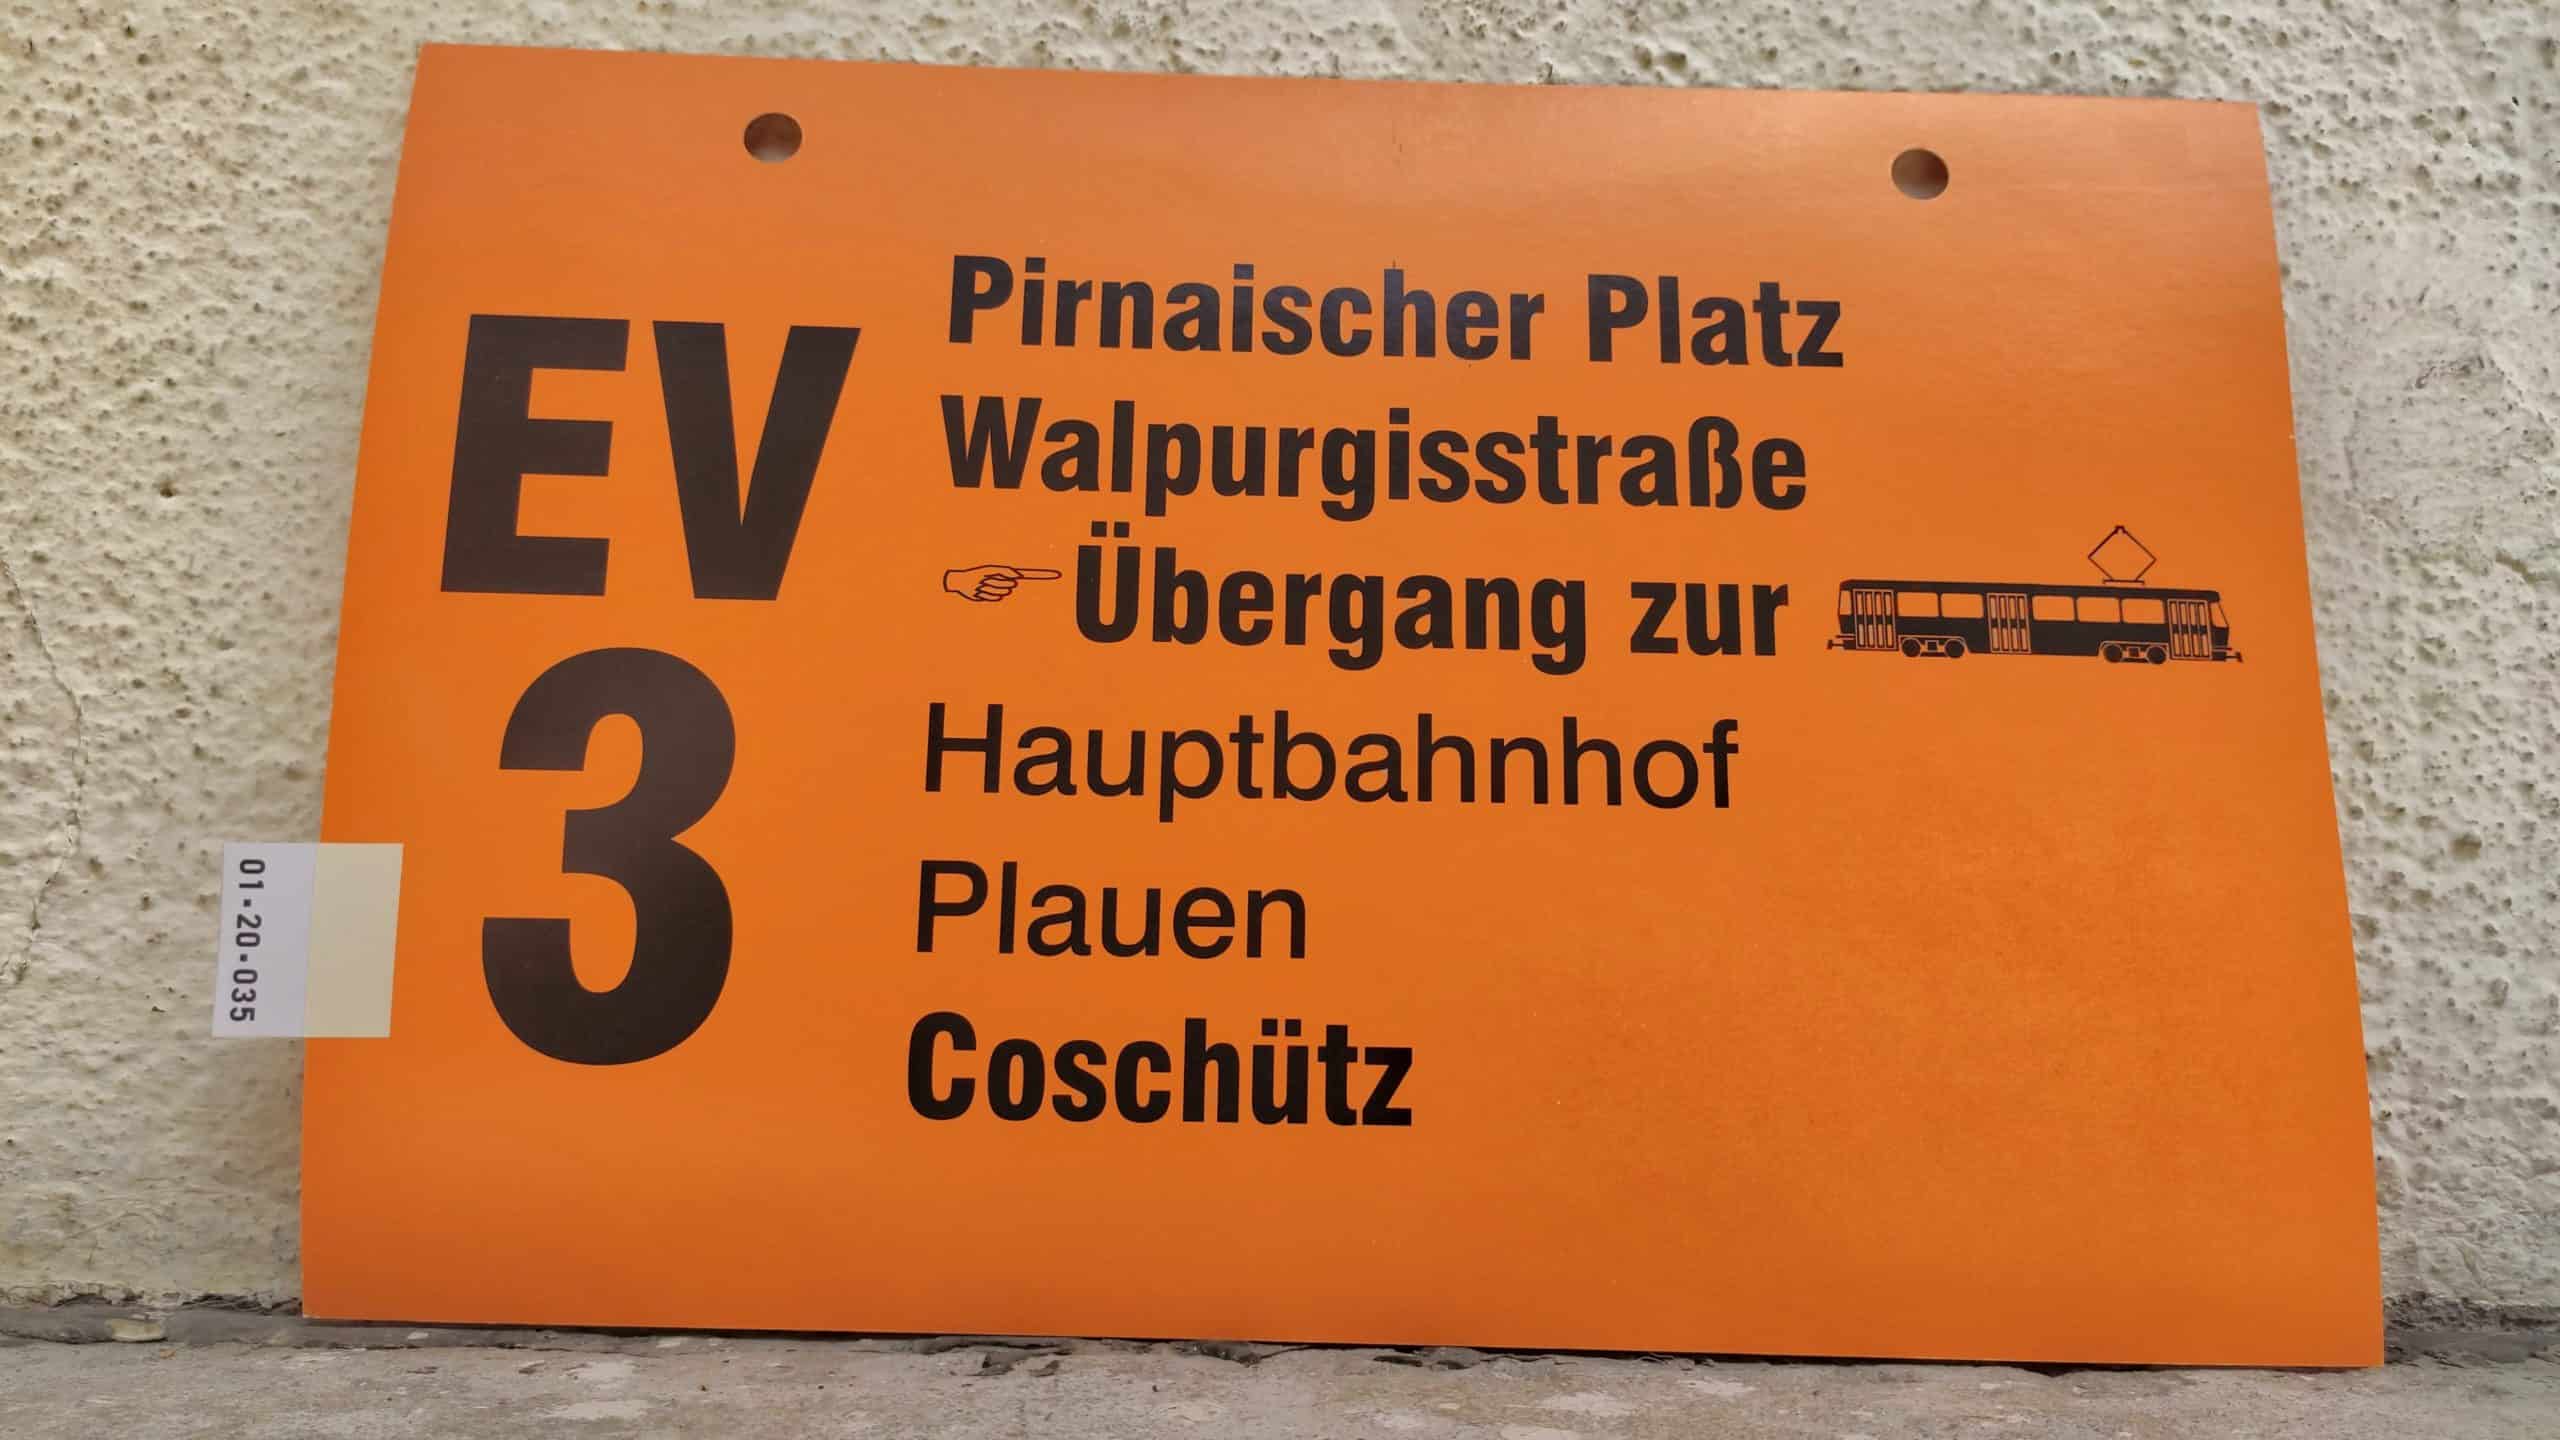 EV 3 Pirnaischer Platz – Coschütz